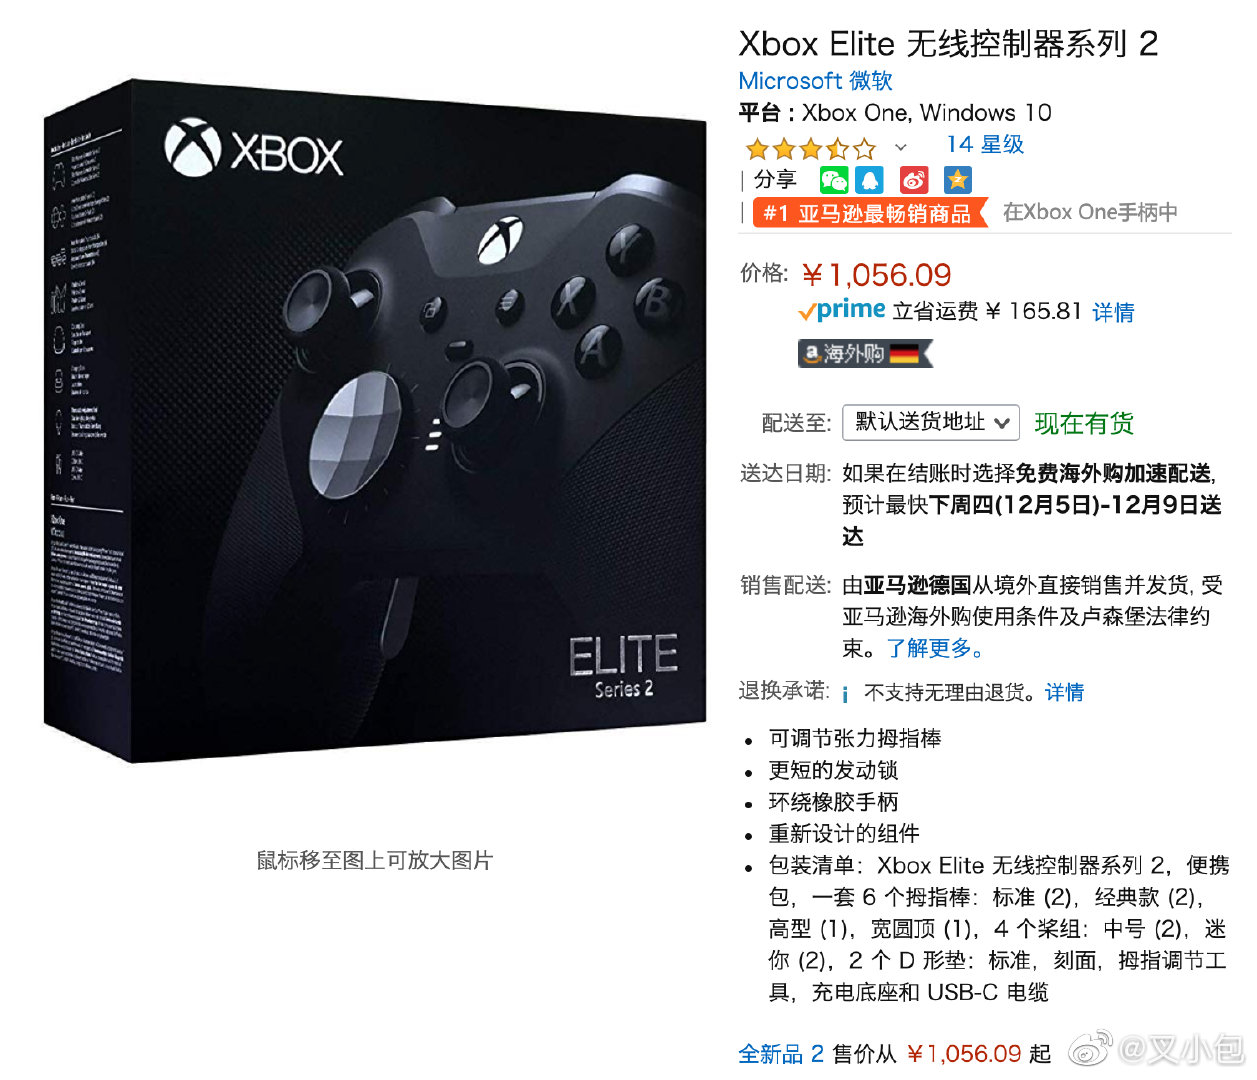 亚马逊黑五海外购一些好价的游戏数码产品 供大家参考 德亚价格真的狠 Xbox 来自网易大神圈子 叉小包